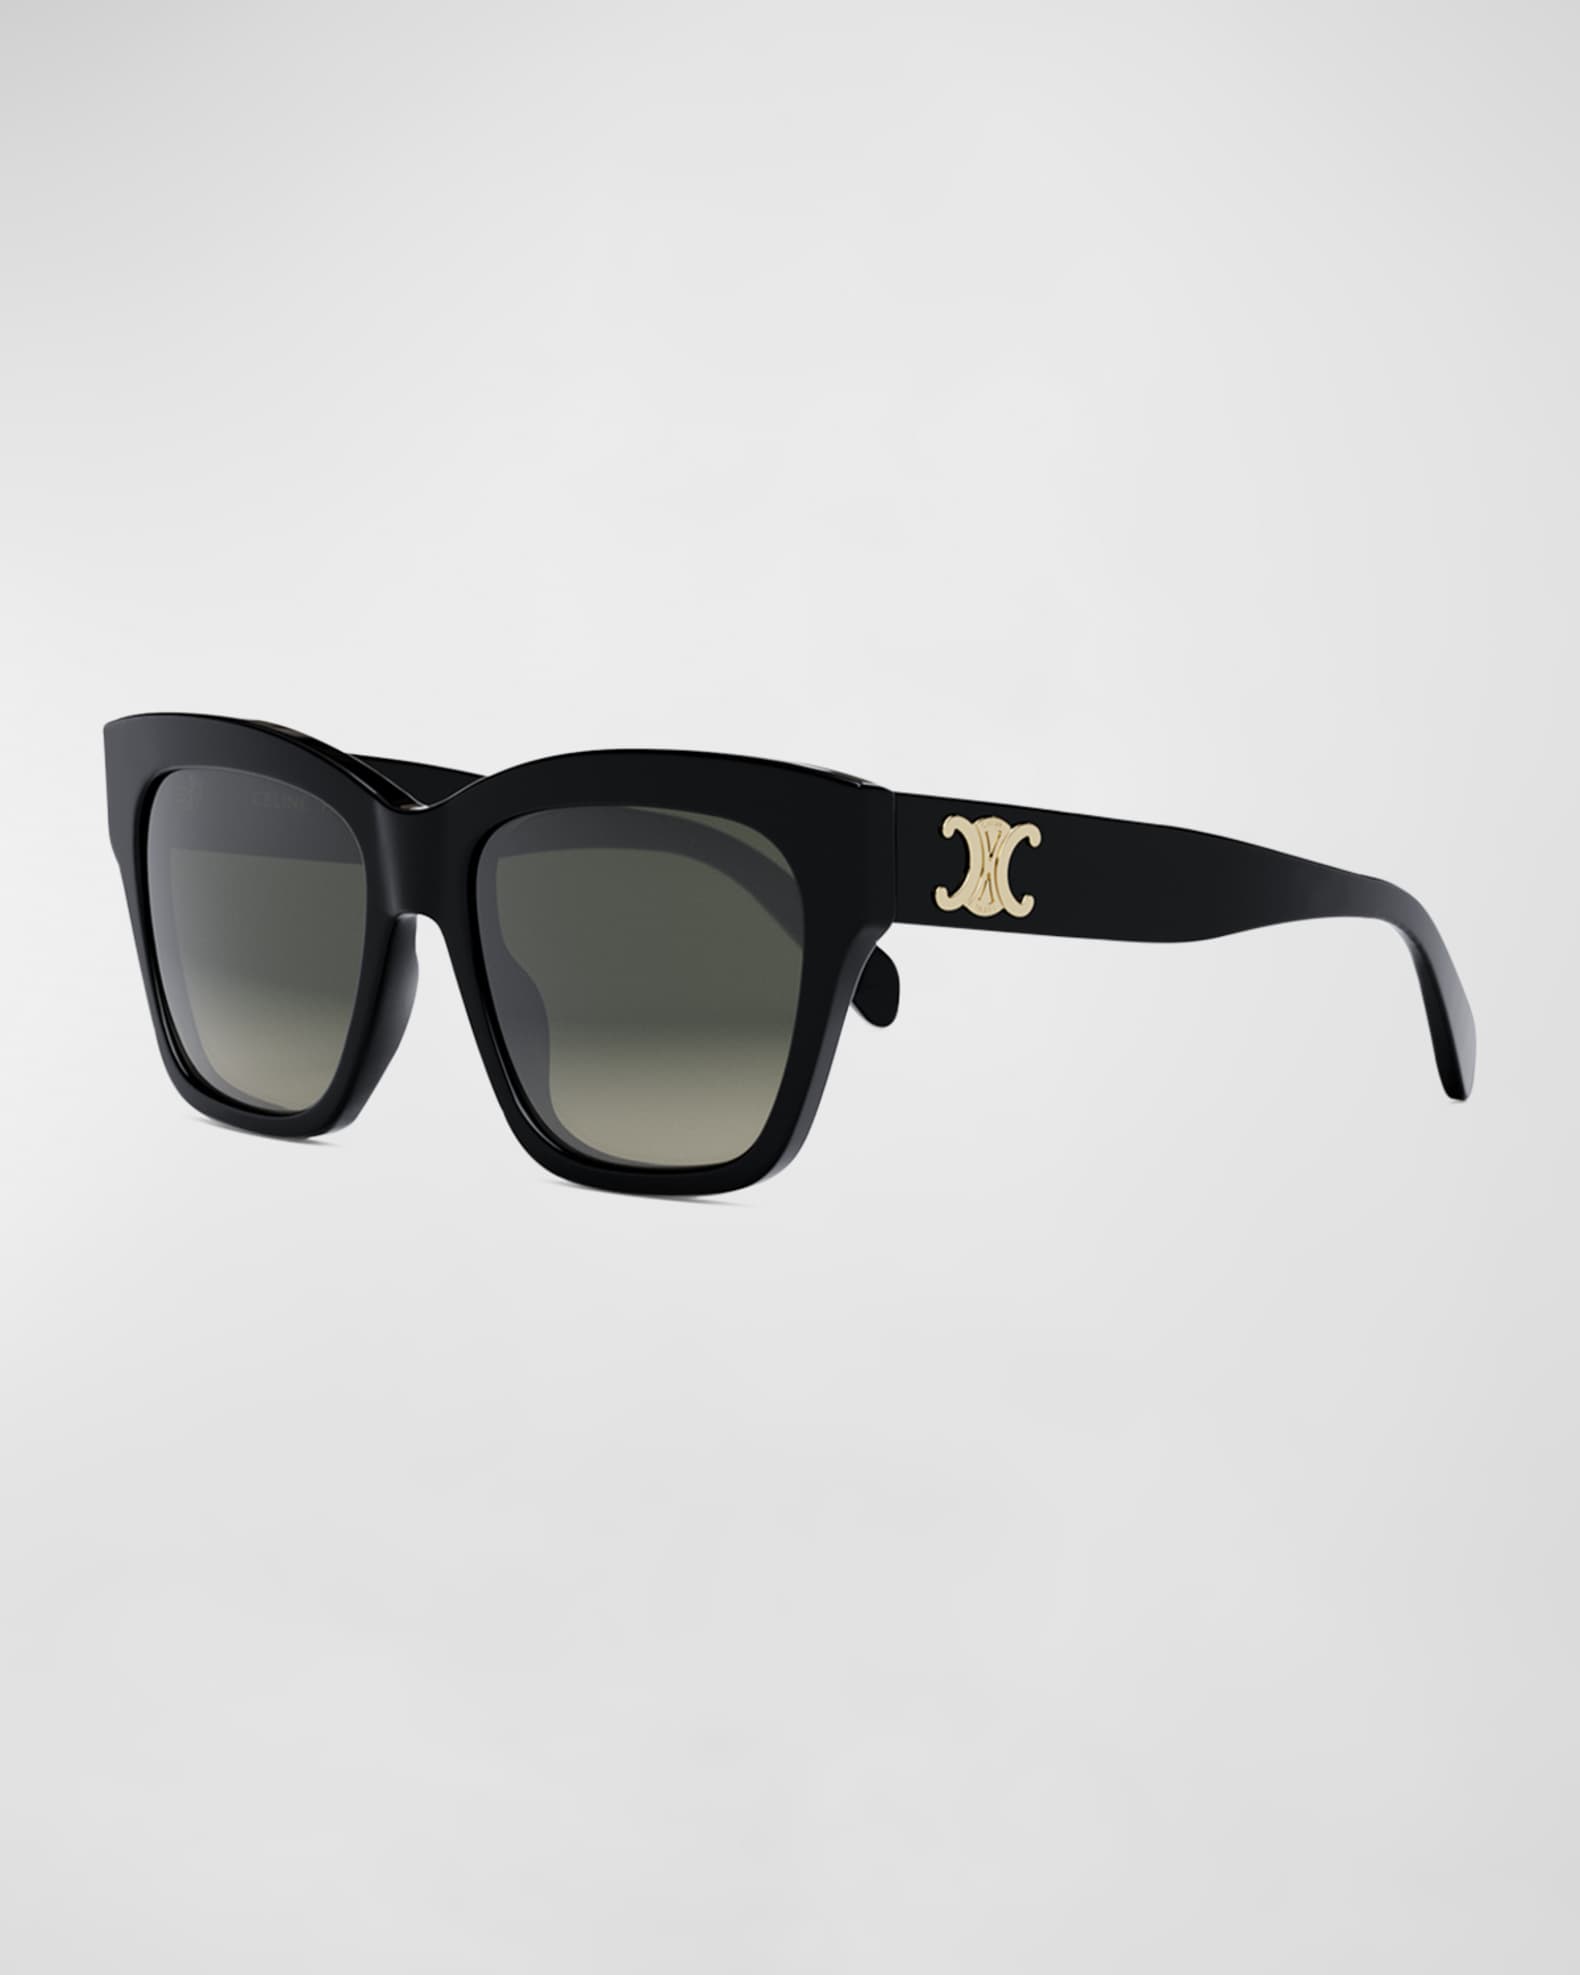 Saint Laurent Grey Square Unisex Sunglasses SL292-30007082001 